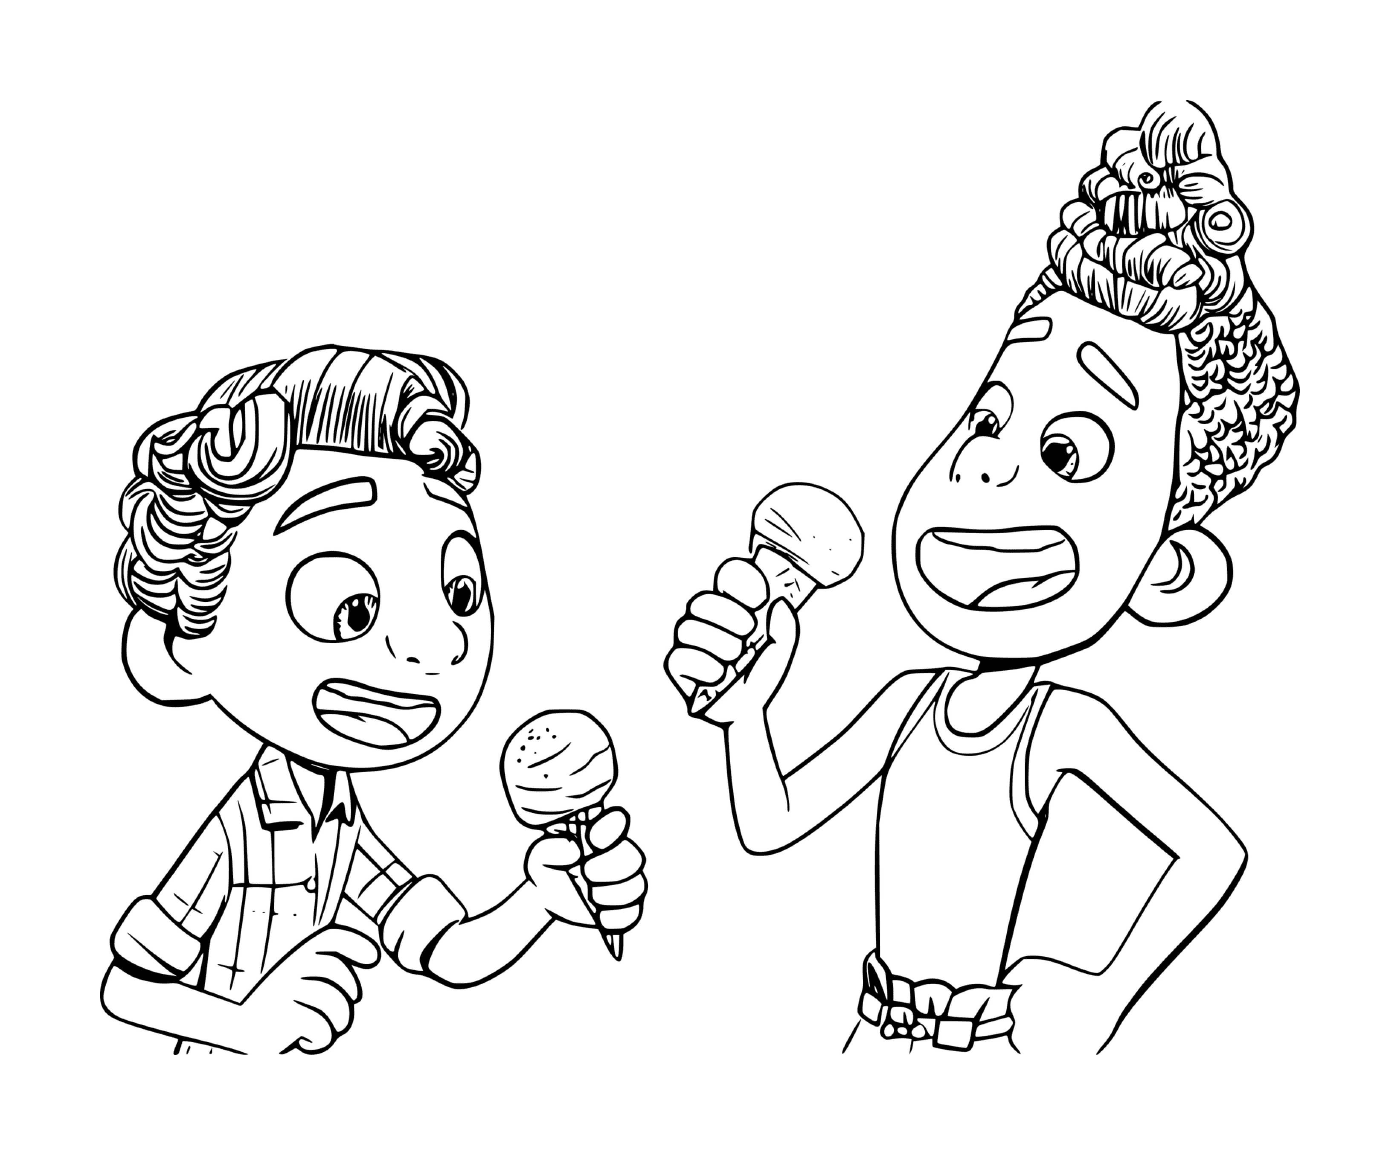   Deux personnes mangeant de la glace 